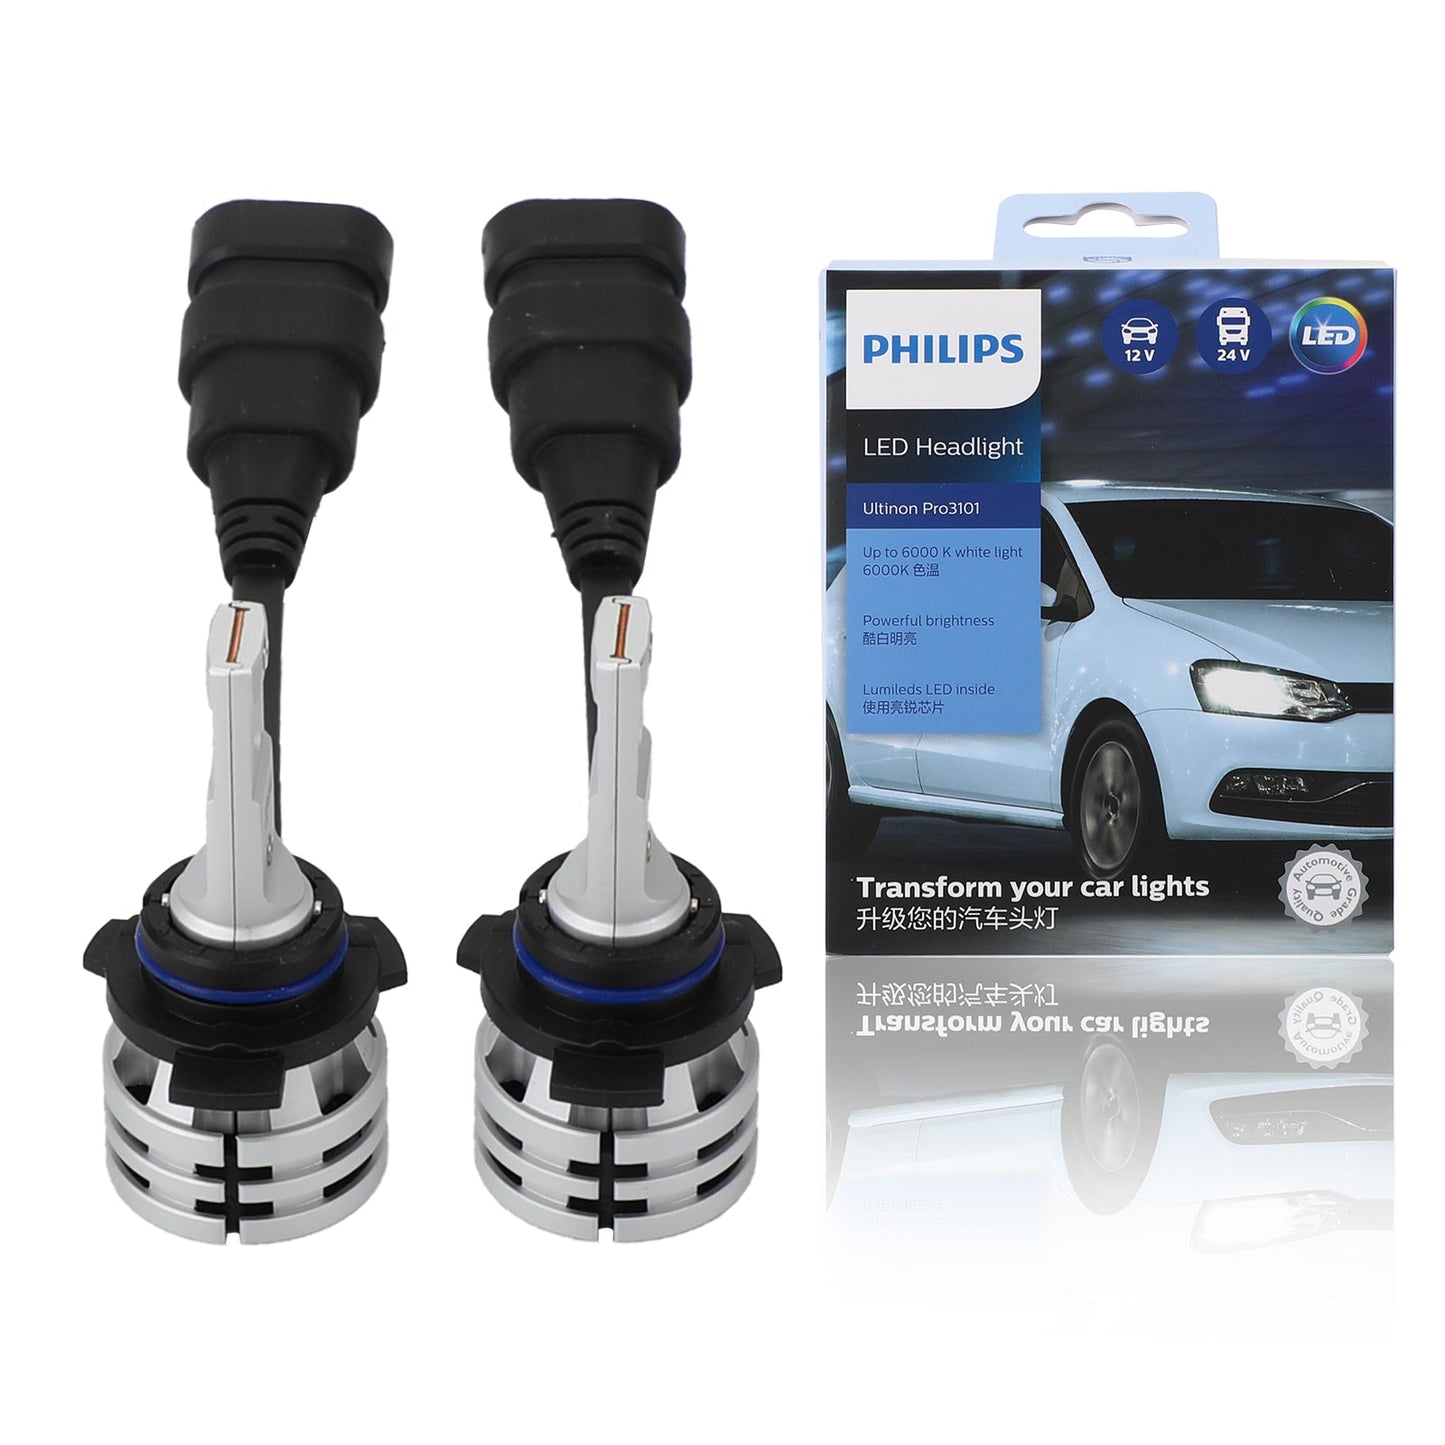 Für Philips Ultinon Pro3101 HL 24W 6000K LED-Scheinwerfer-Set generisch